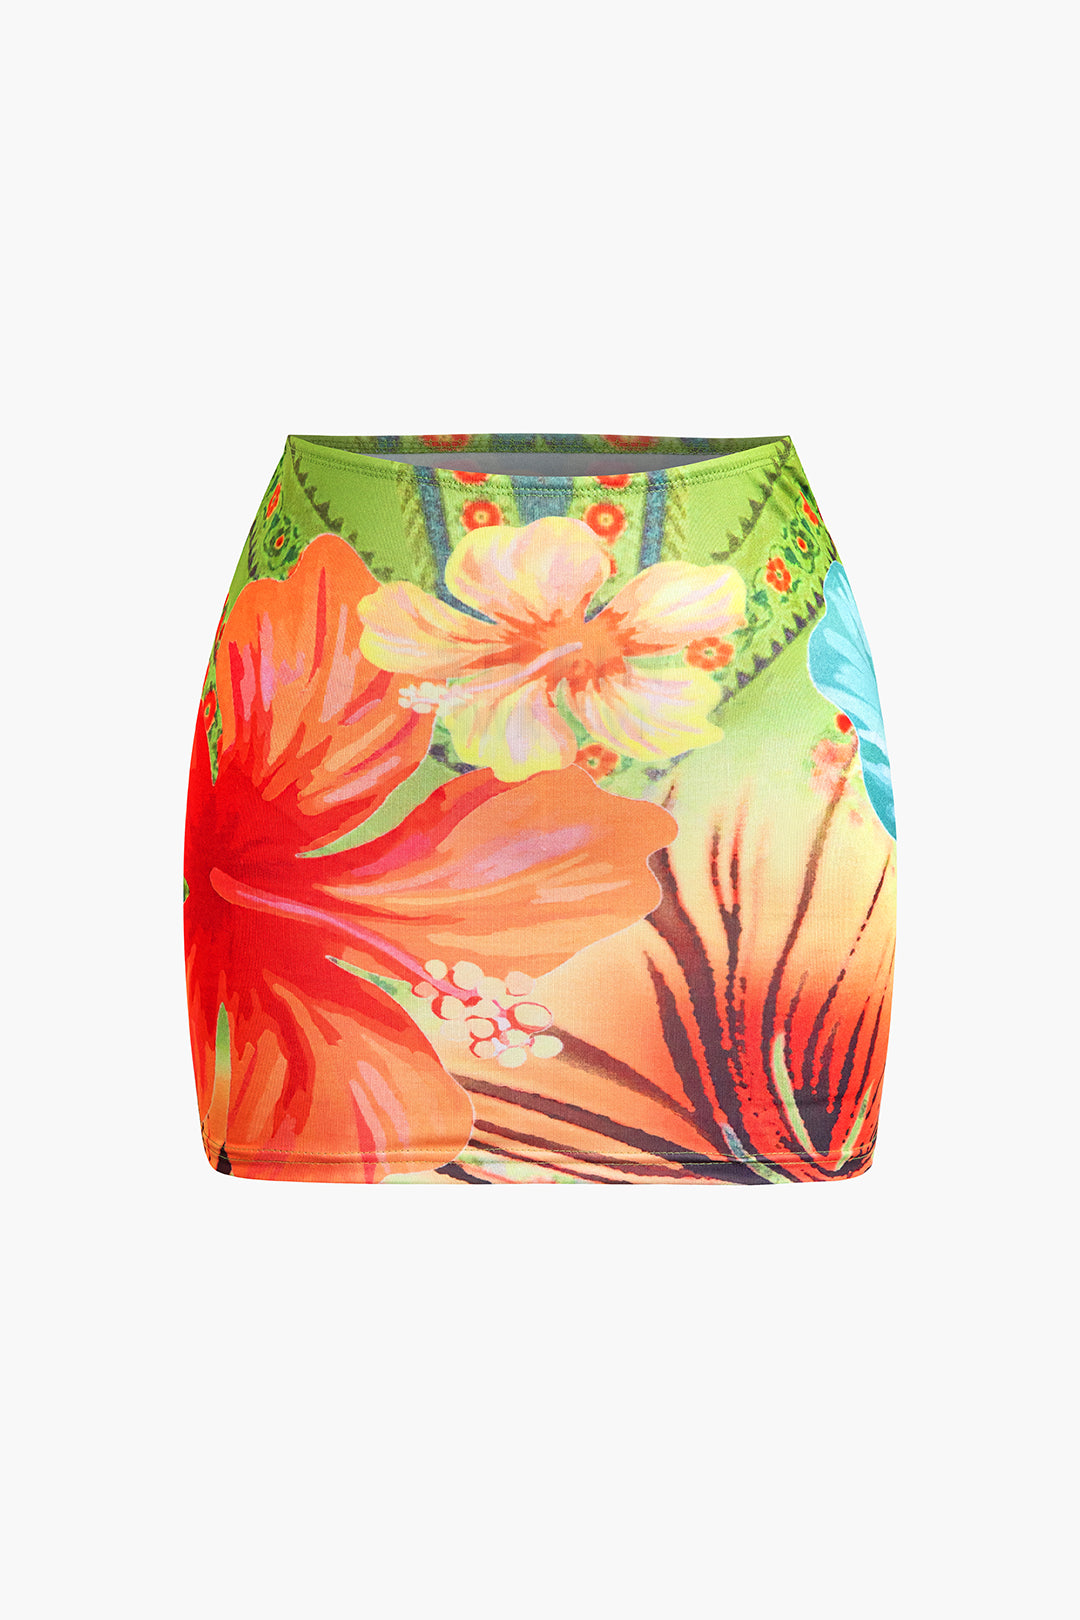 Floral Print Knot Halter Backless V-Neck Top And Mini Skirt Set